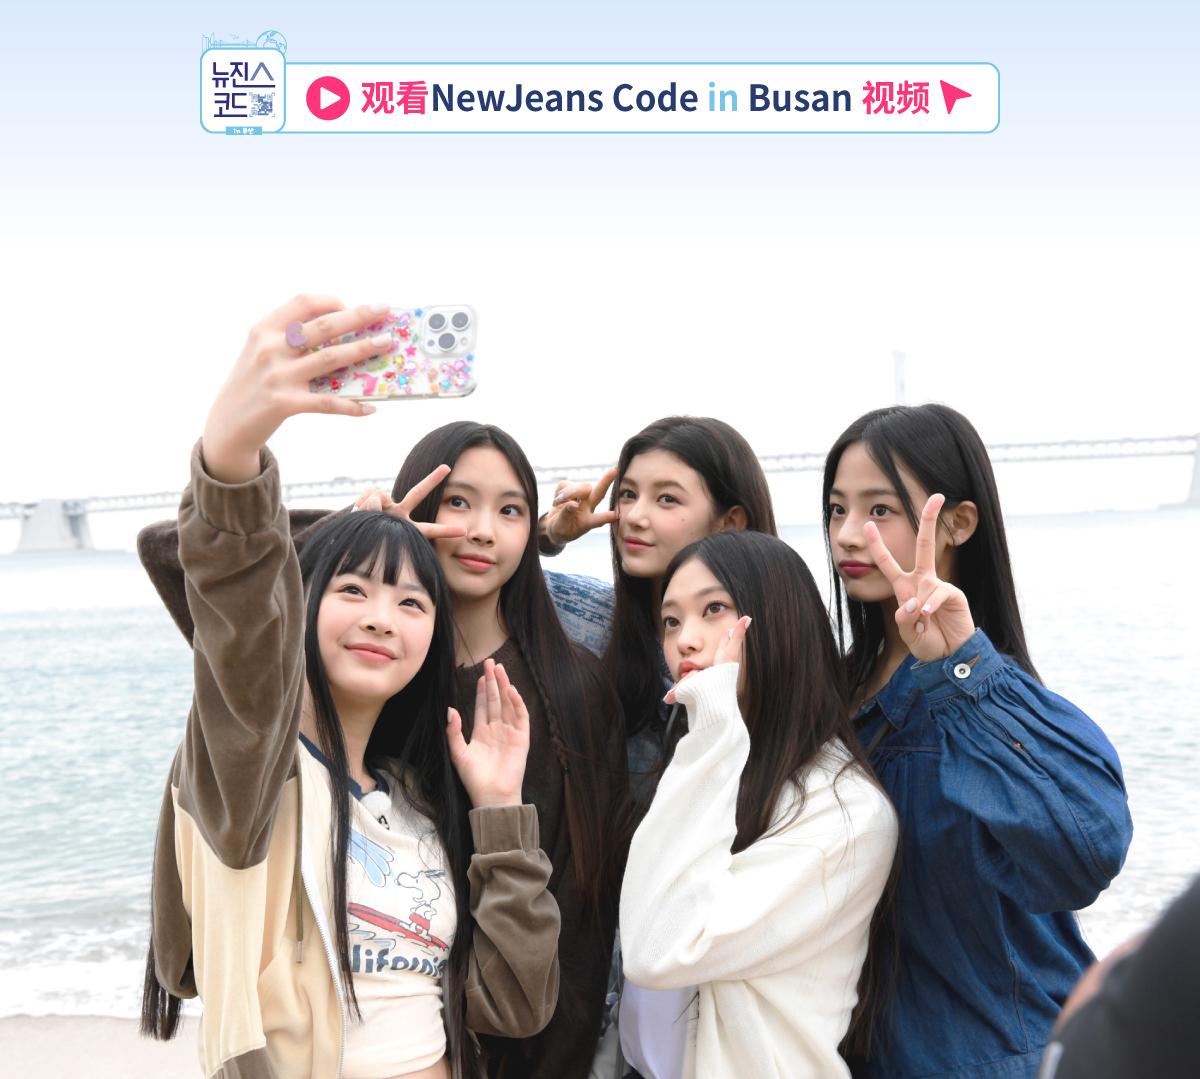 观看NewJeans Code in Busan 视频